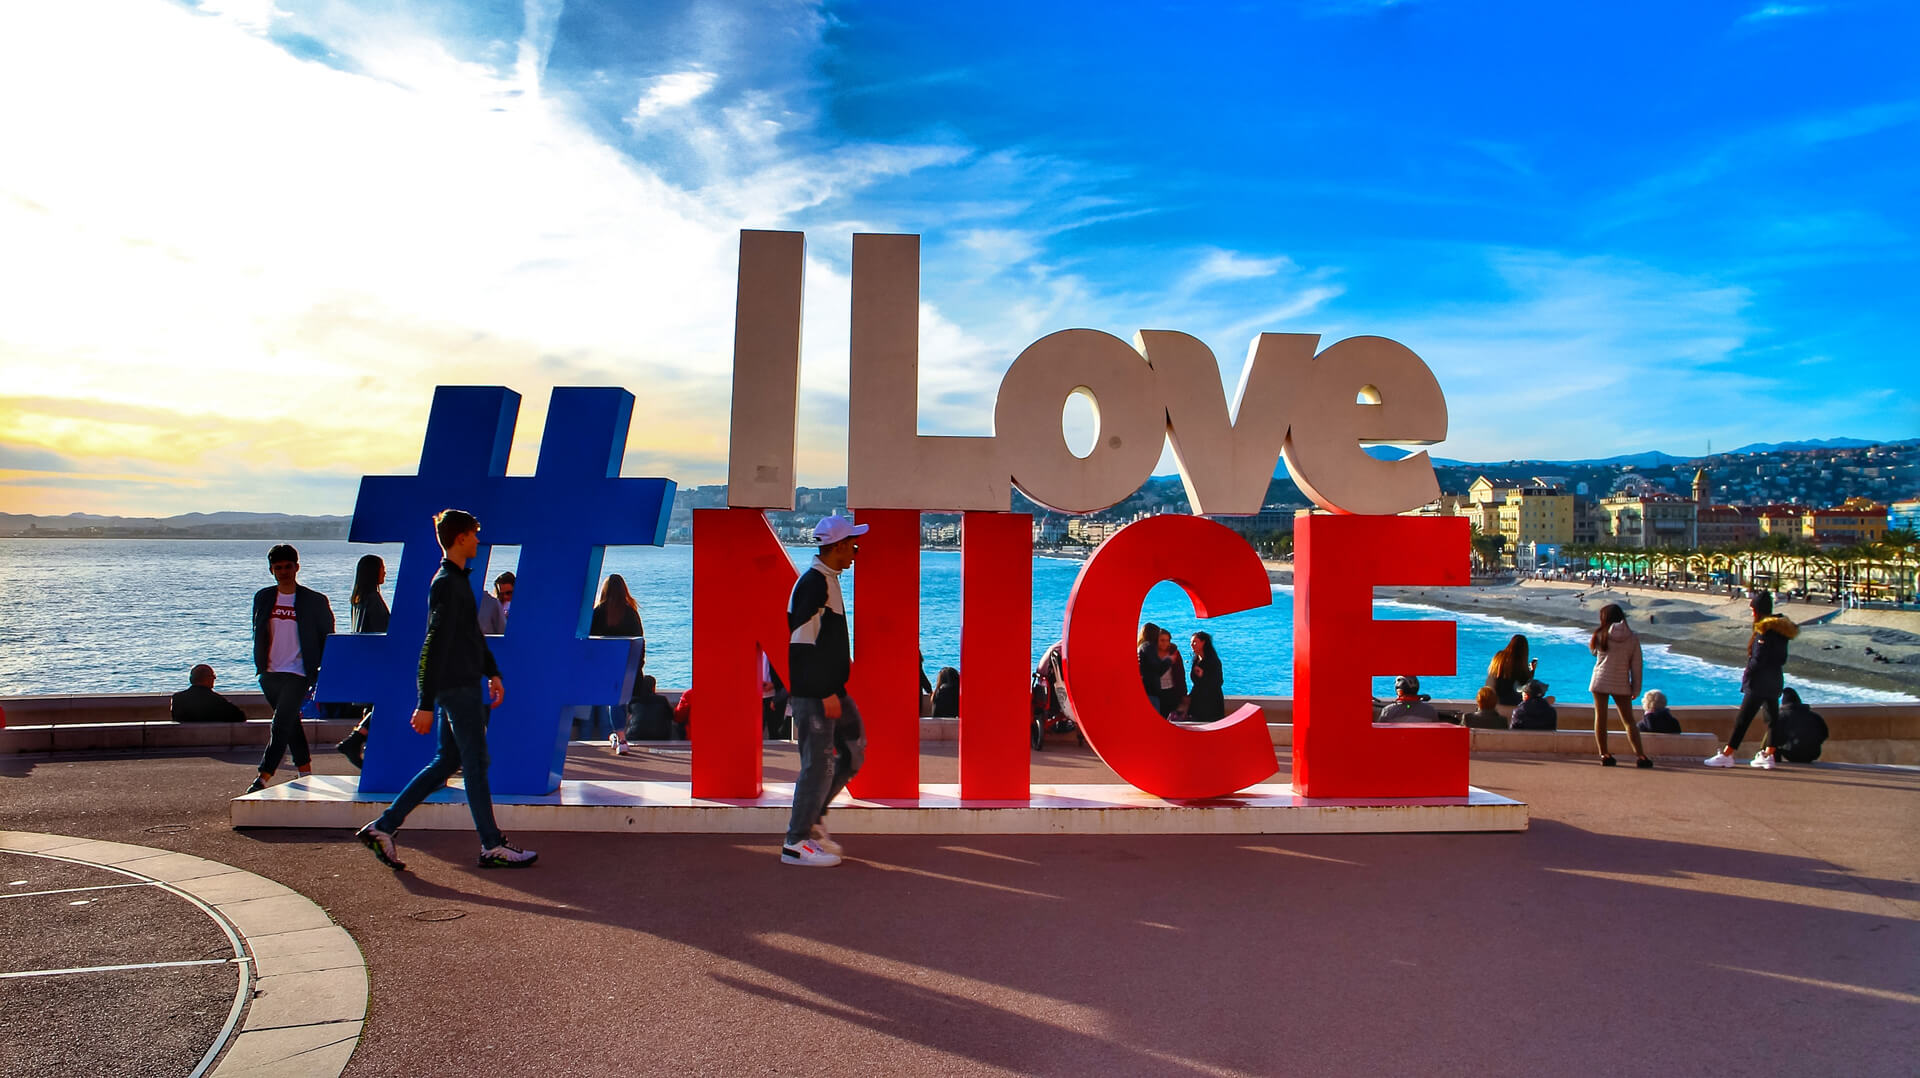 Ницца, Франция: Туристы фотографируются у знака "Я люблю Ниццу" с видом на городской пейзаж Ниццы, Средиземное море и Английскую набережную.